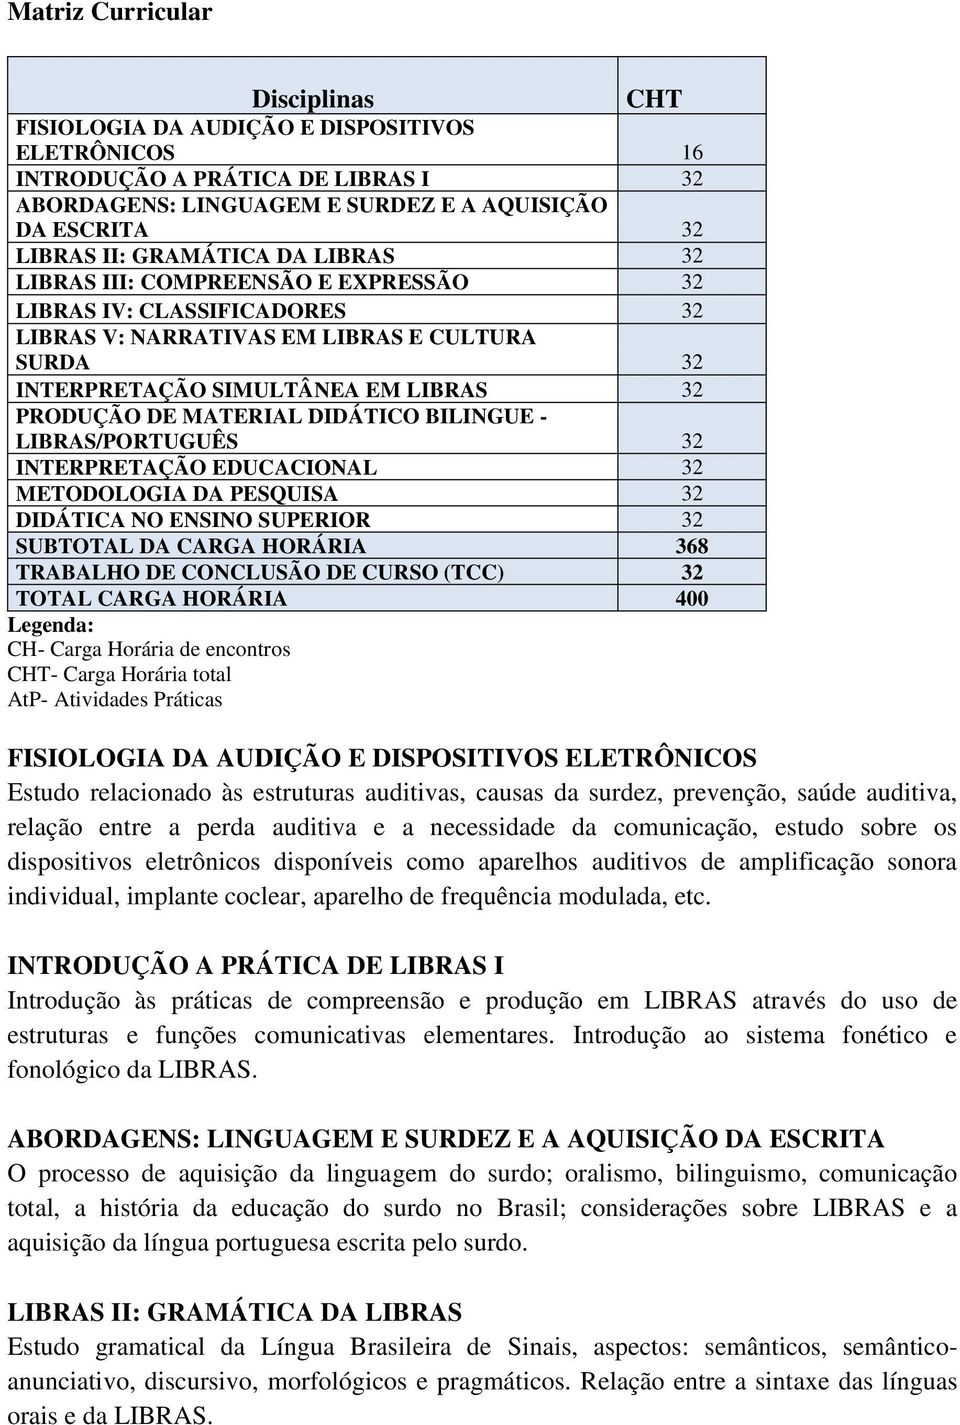 MATERIAL DIDÁTICO BILINGUE - LIBRAS/PORTUGUÊS 32 INTERPRETAÇÃO EDUCACIONAL 32 METODOLOGIA DA PESQUISA 32 DIDÁTICA NO ENSINO SUPERIOR 32 SUBTOTAL DA CARGA HORÁRIA 368 TRABALHO DE CONCLUSÃO DE CURSO